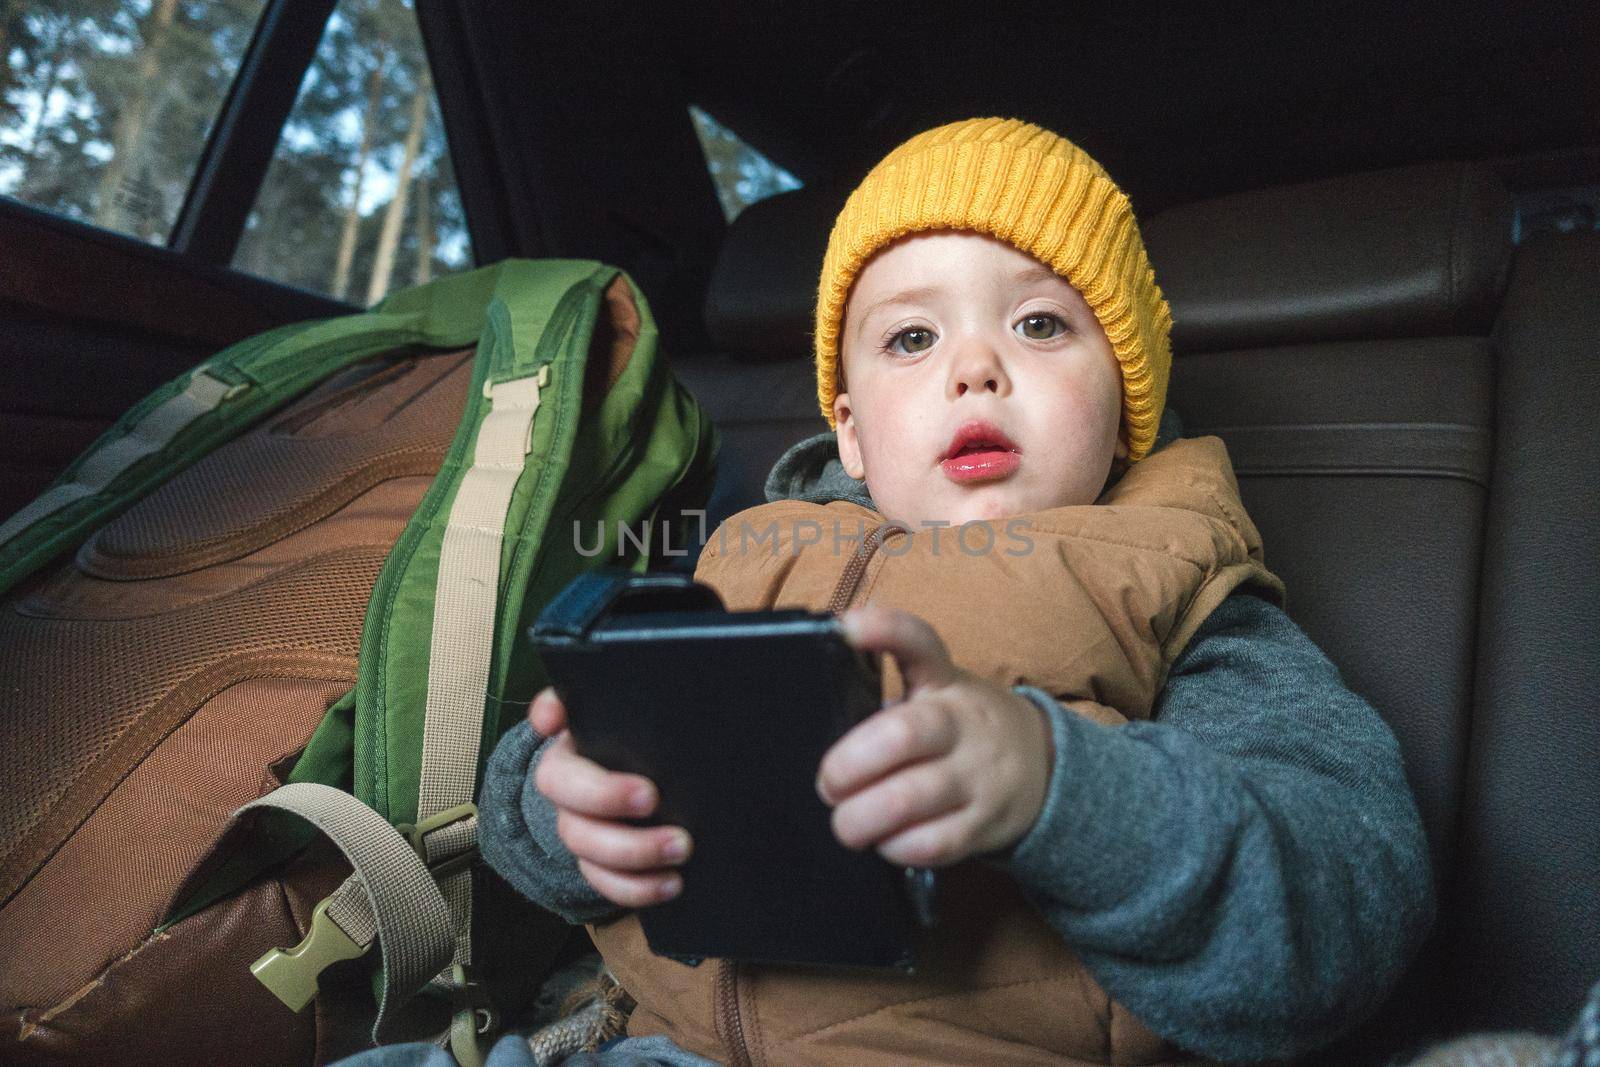 Little boy with gadget in car by Demkat